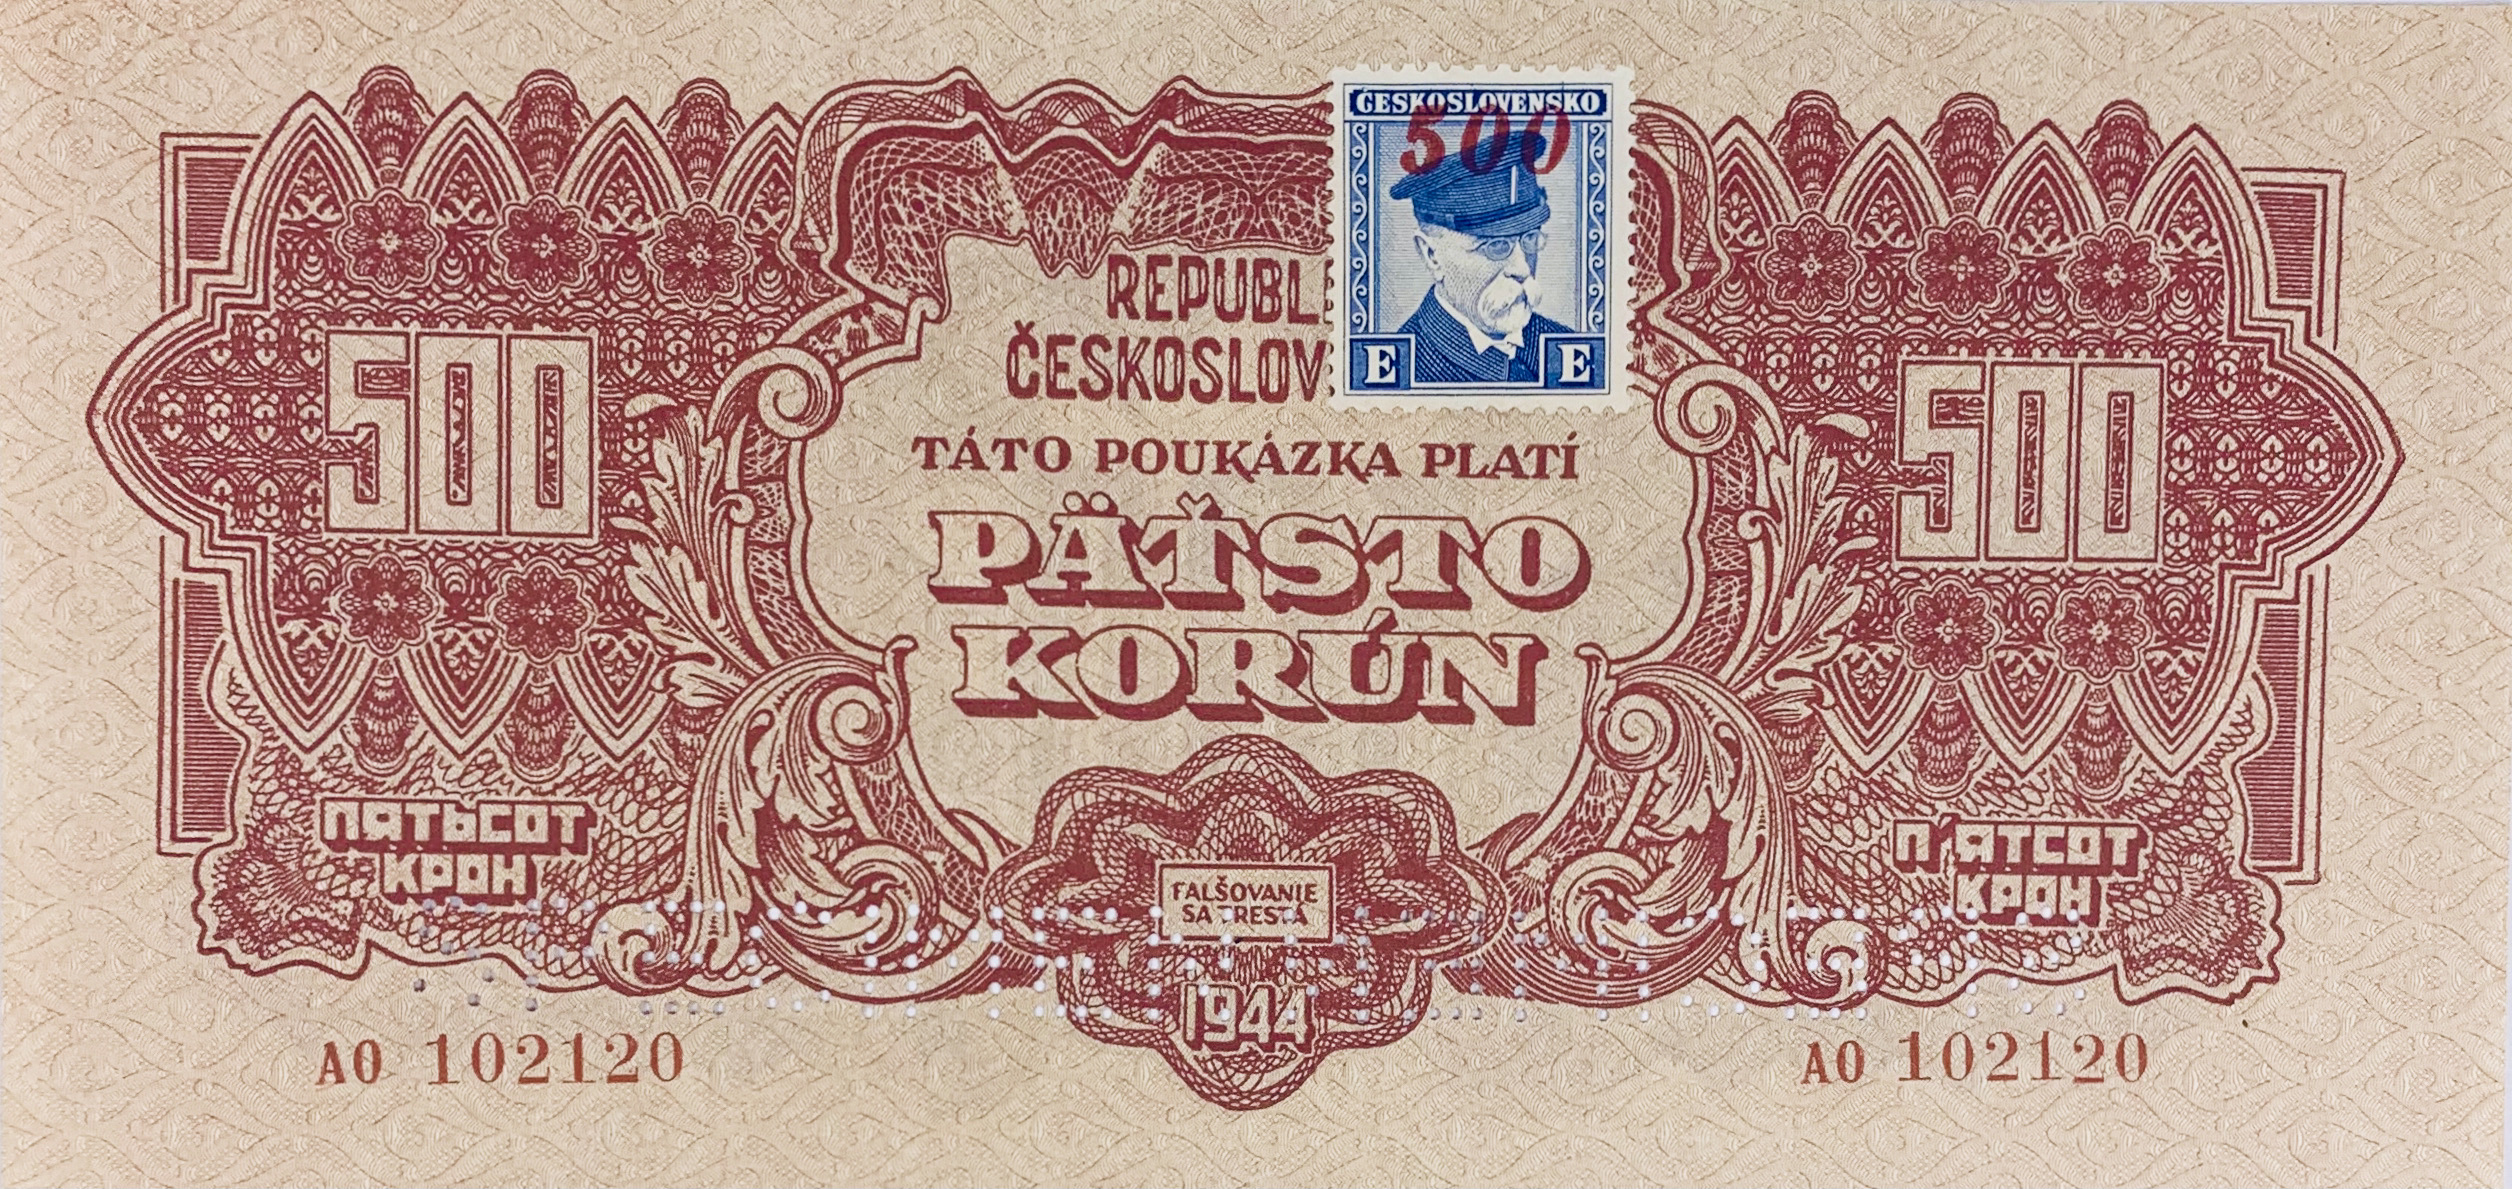 500 korun, 1944 - kolek